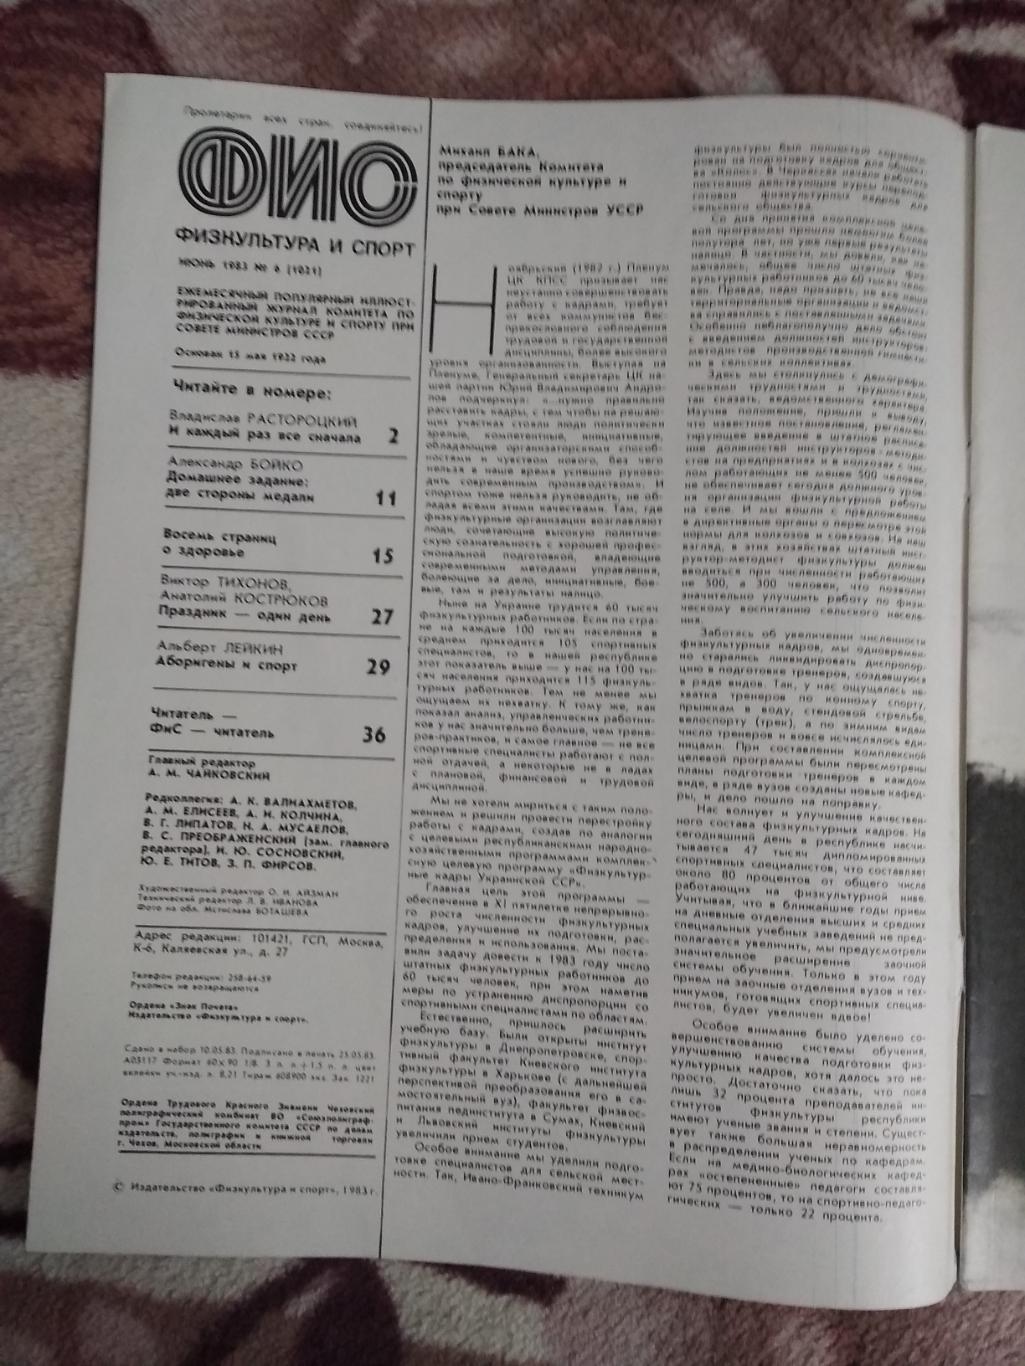 Журнал.Физкультура и спорт № 6 1983 г. (ФиС). 1